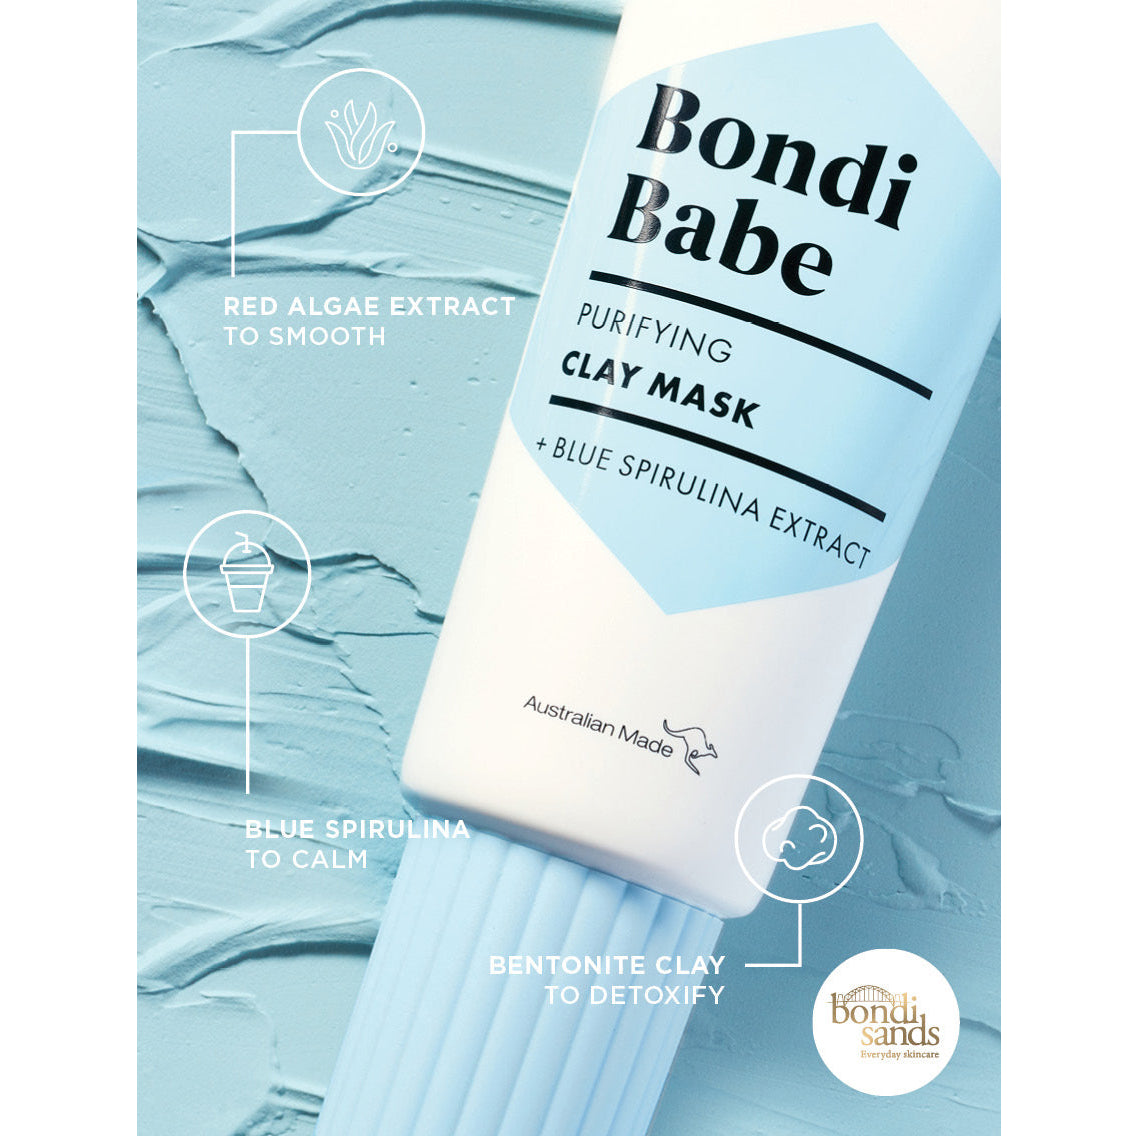 Bondi Sands Bondi Babe Clay Mask (75ml) key ingredients